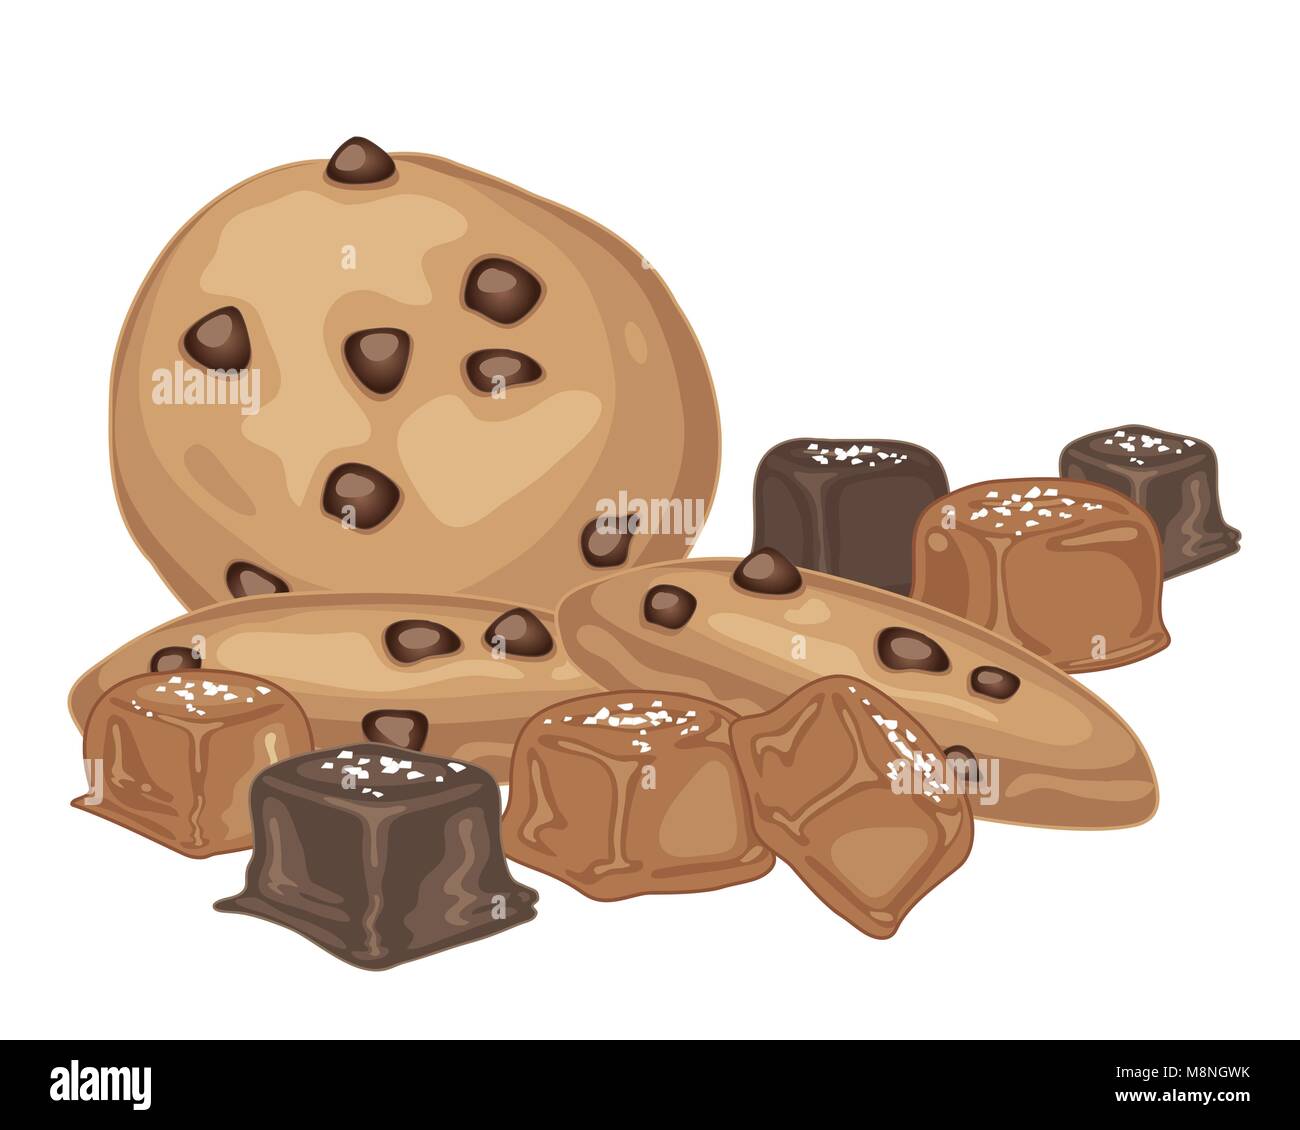 Un vecteur illustration en format eps 10 bonbons de caramel au beurre salé avec enrobage de chocolat et de chocolat sur fond blanc Illustration de Vecteur